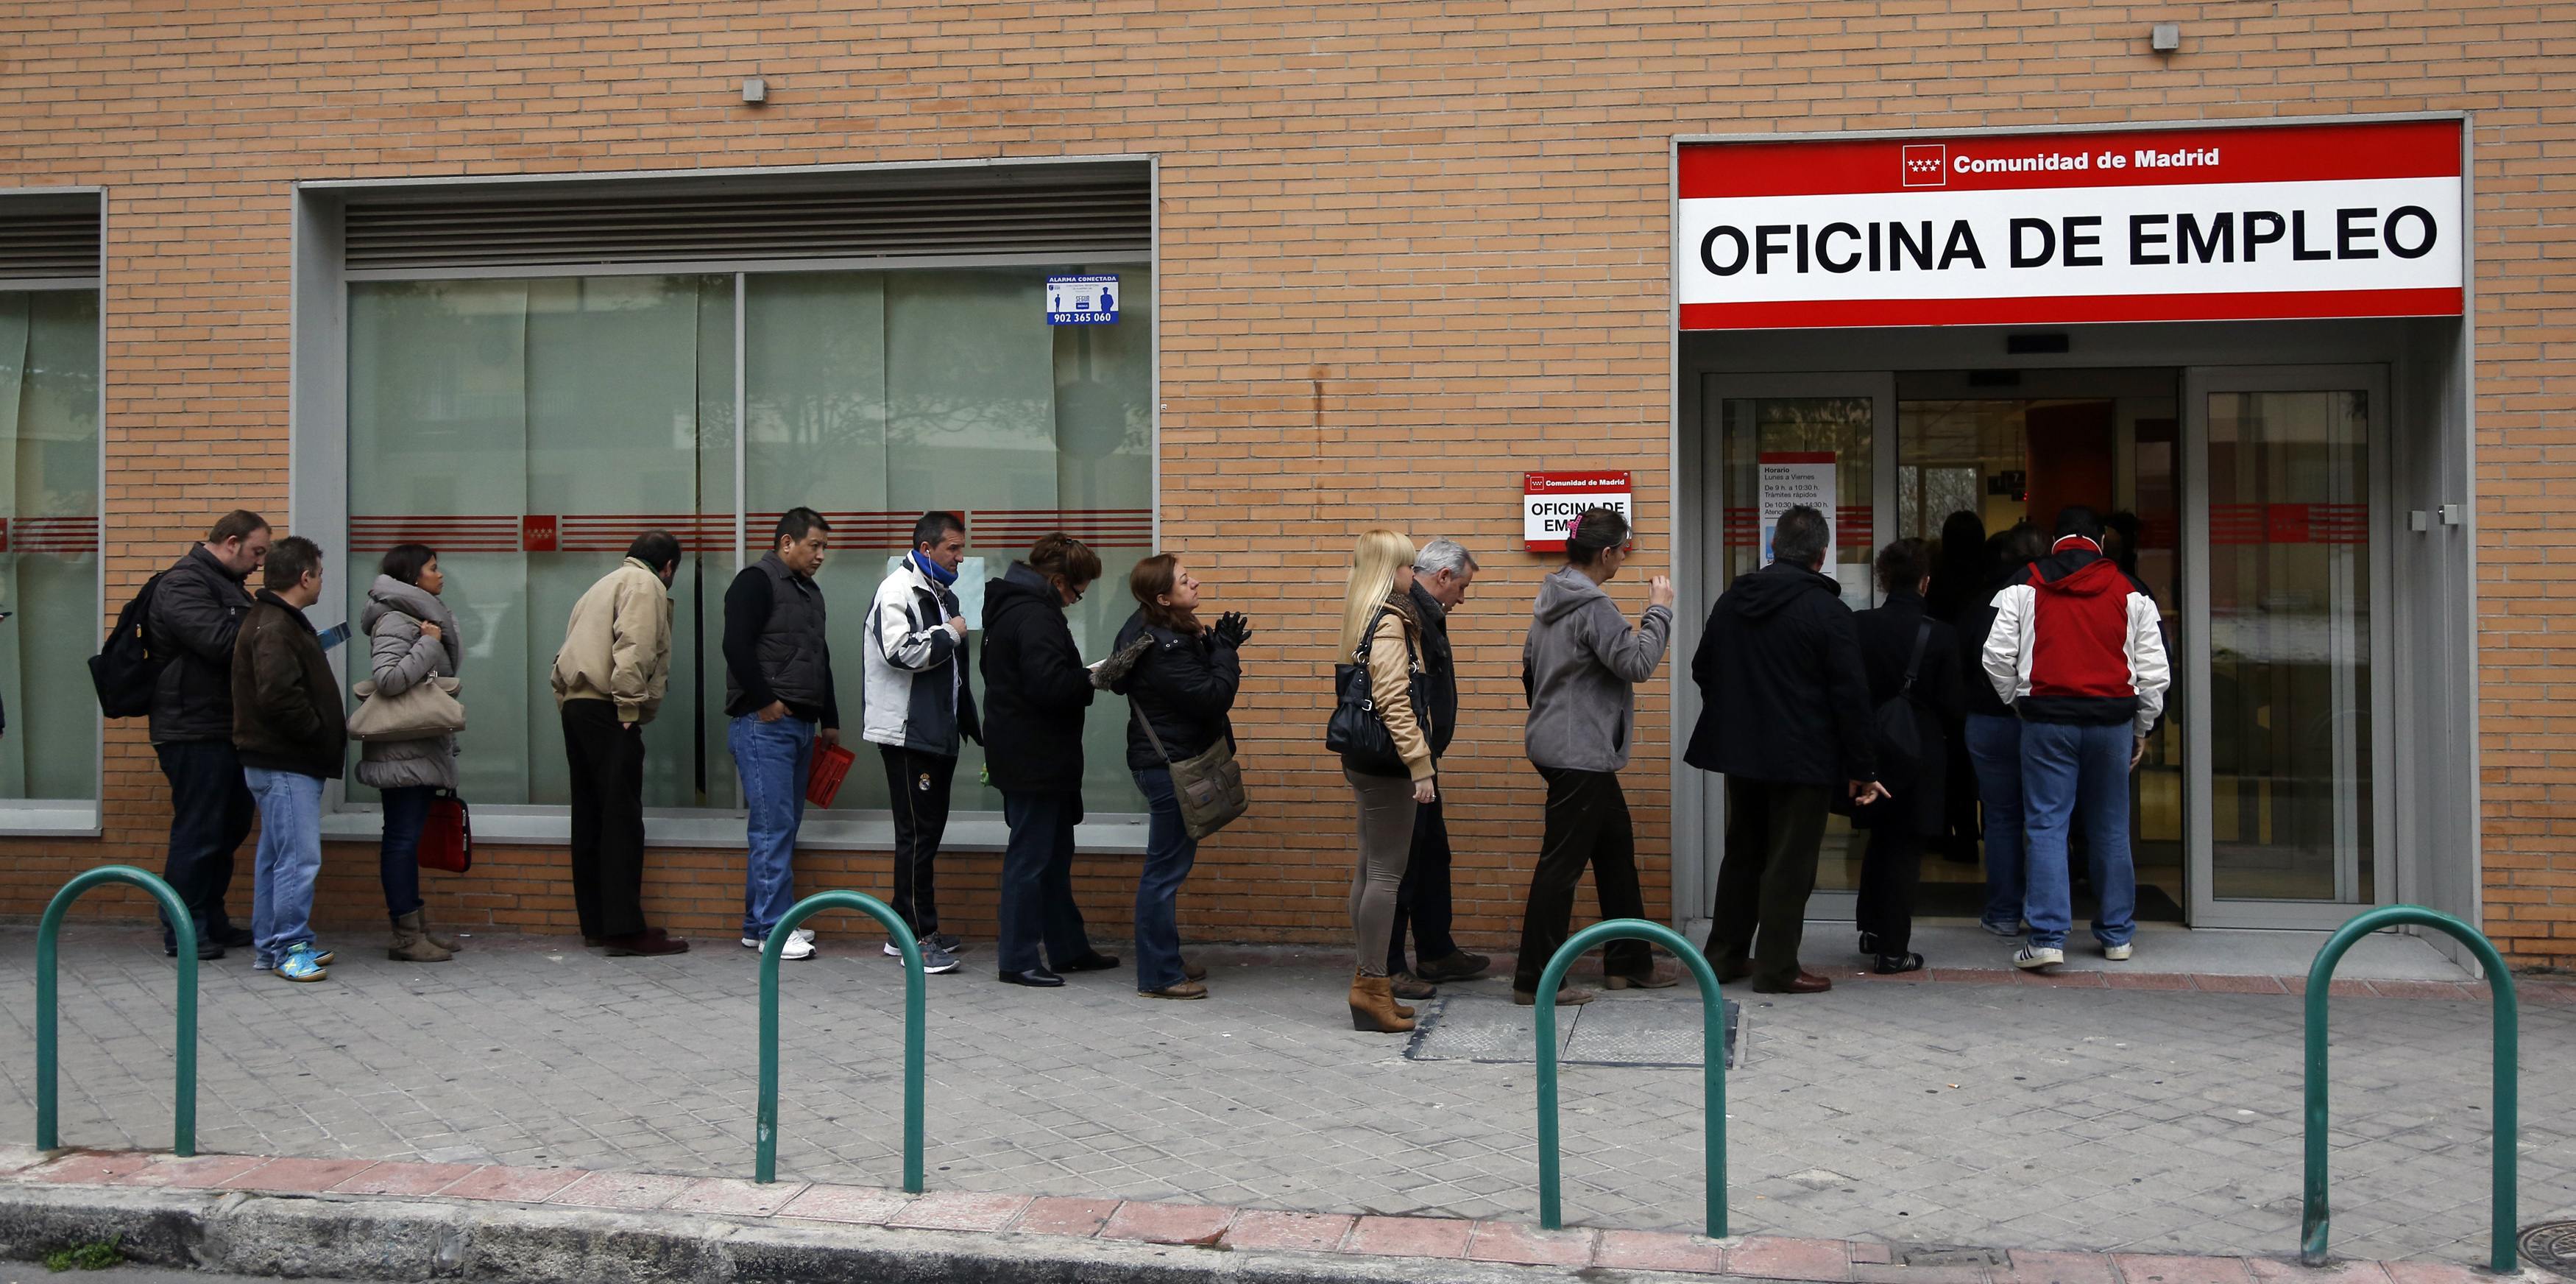 Μειώθηκε η ανεργία στην Ισπανία το δεύτερο τρίμηνο του 2014